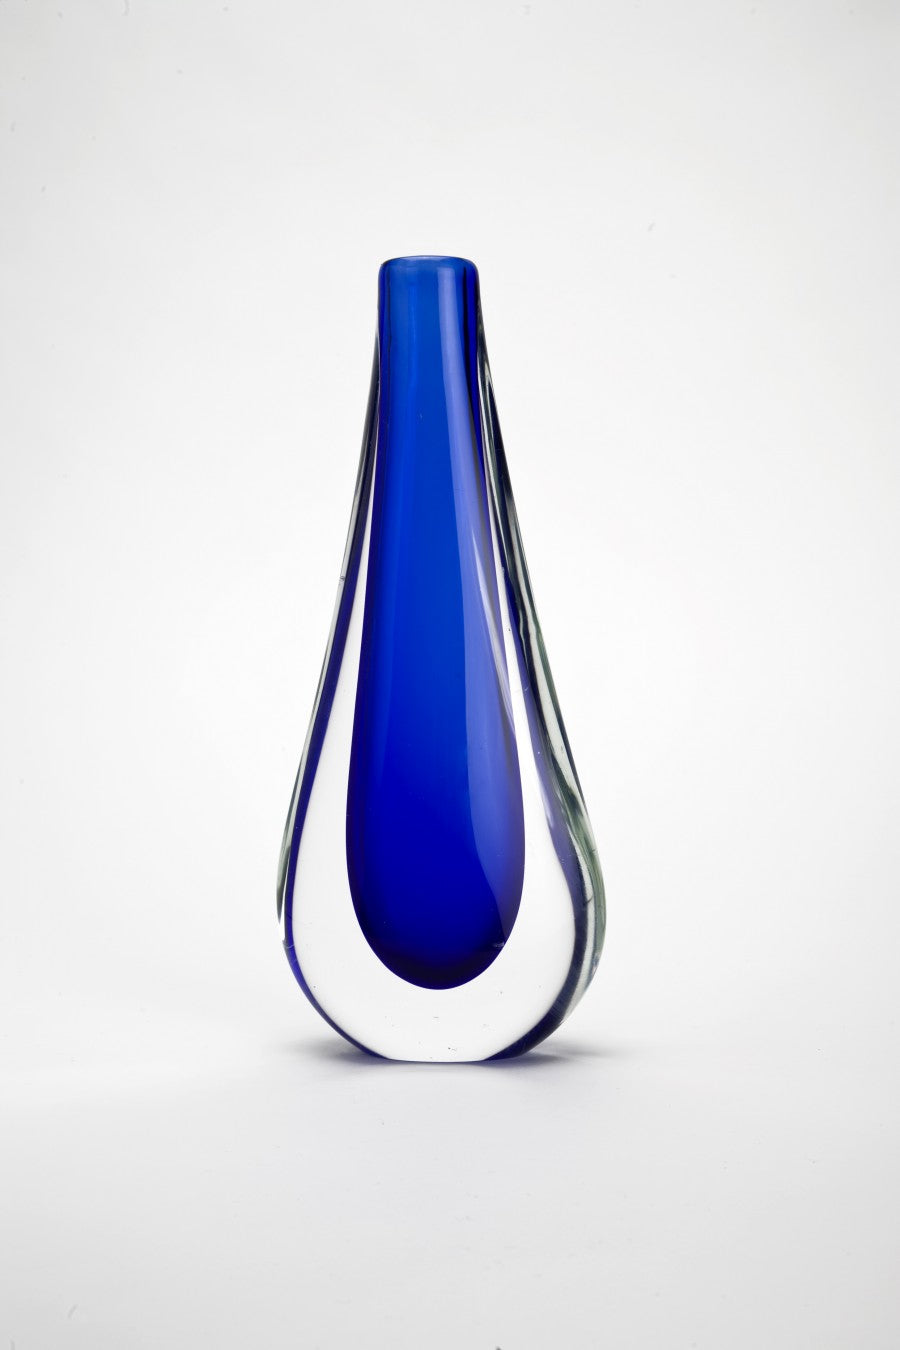 Somerso blauer Vase von Flavio Poli